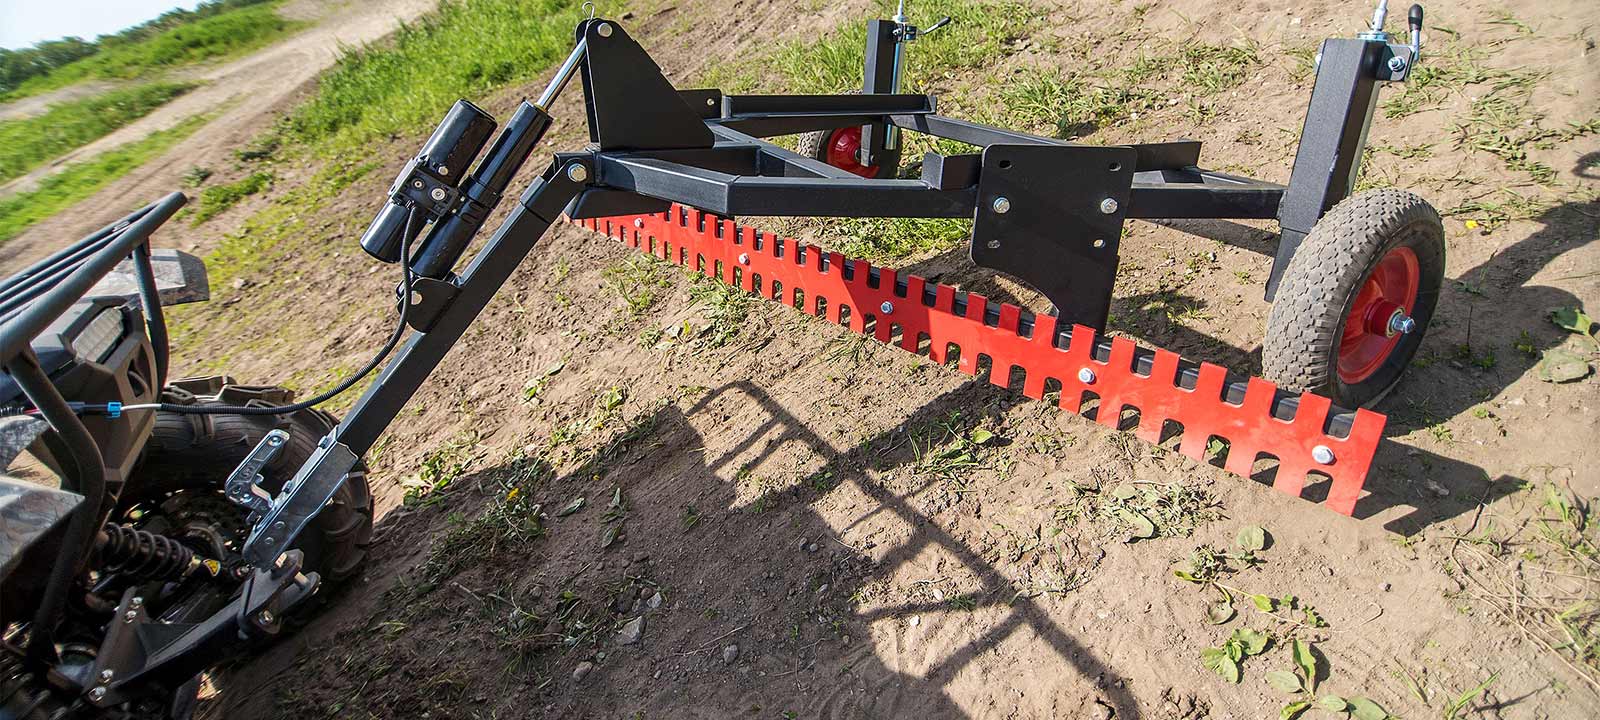 2in1 Modular Plow Bucket  SEGWAY SNARLER ATV – Iron Baltic